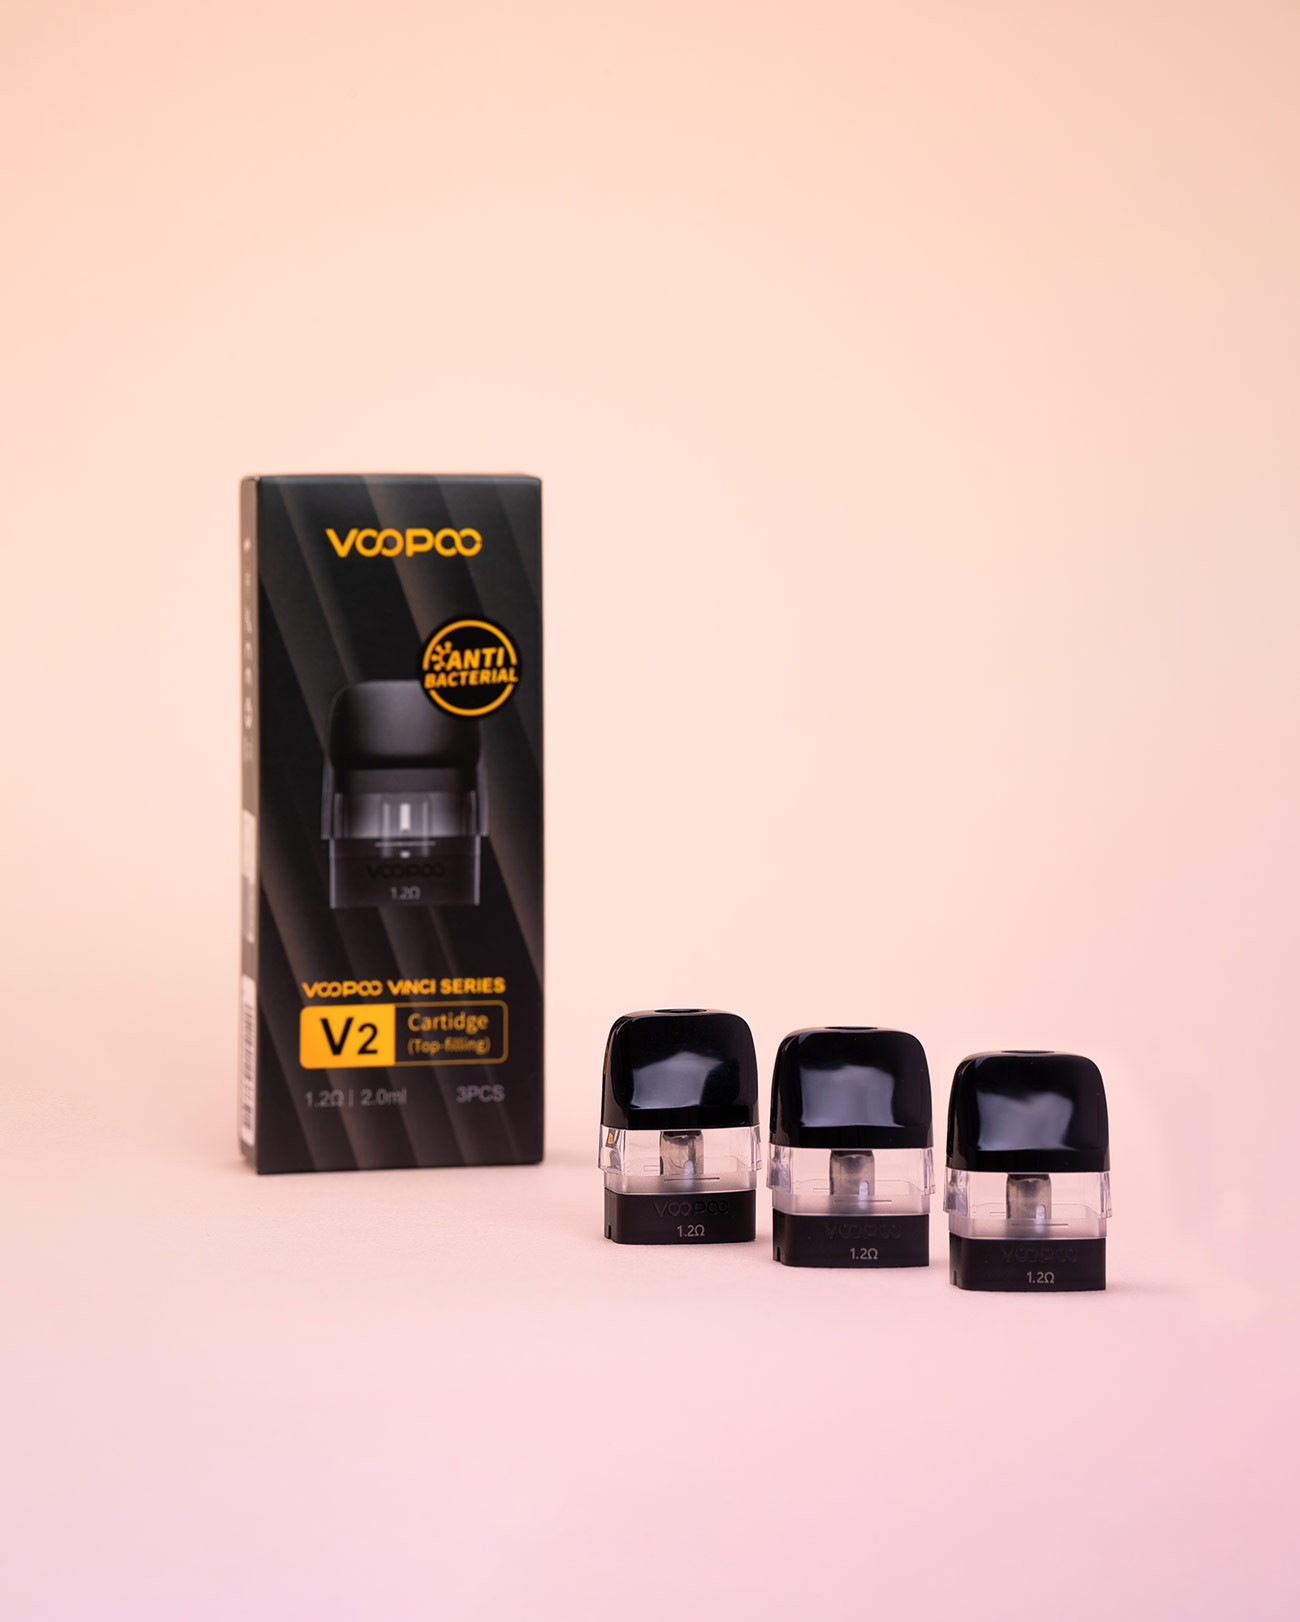 Boîte de 3 cartouches 1,2 ohm tirage serré compatibles avec les pods Vinci Q, Vinci SE et Drag Nano 2 de chez Voopoo.